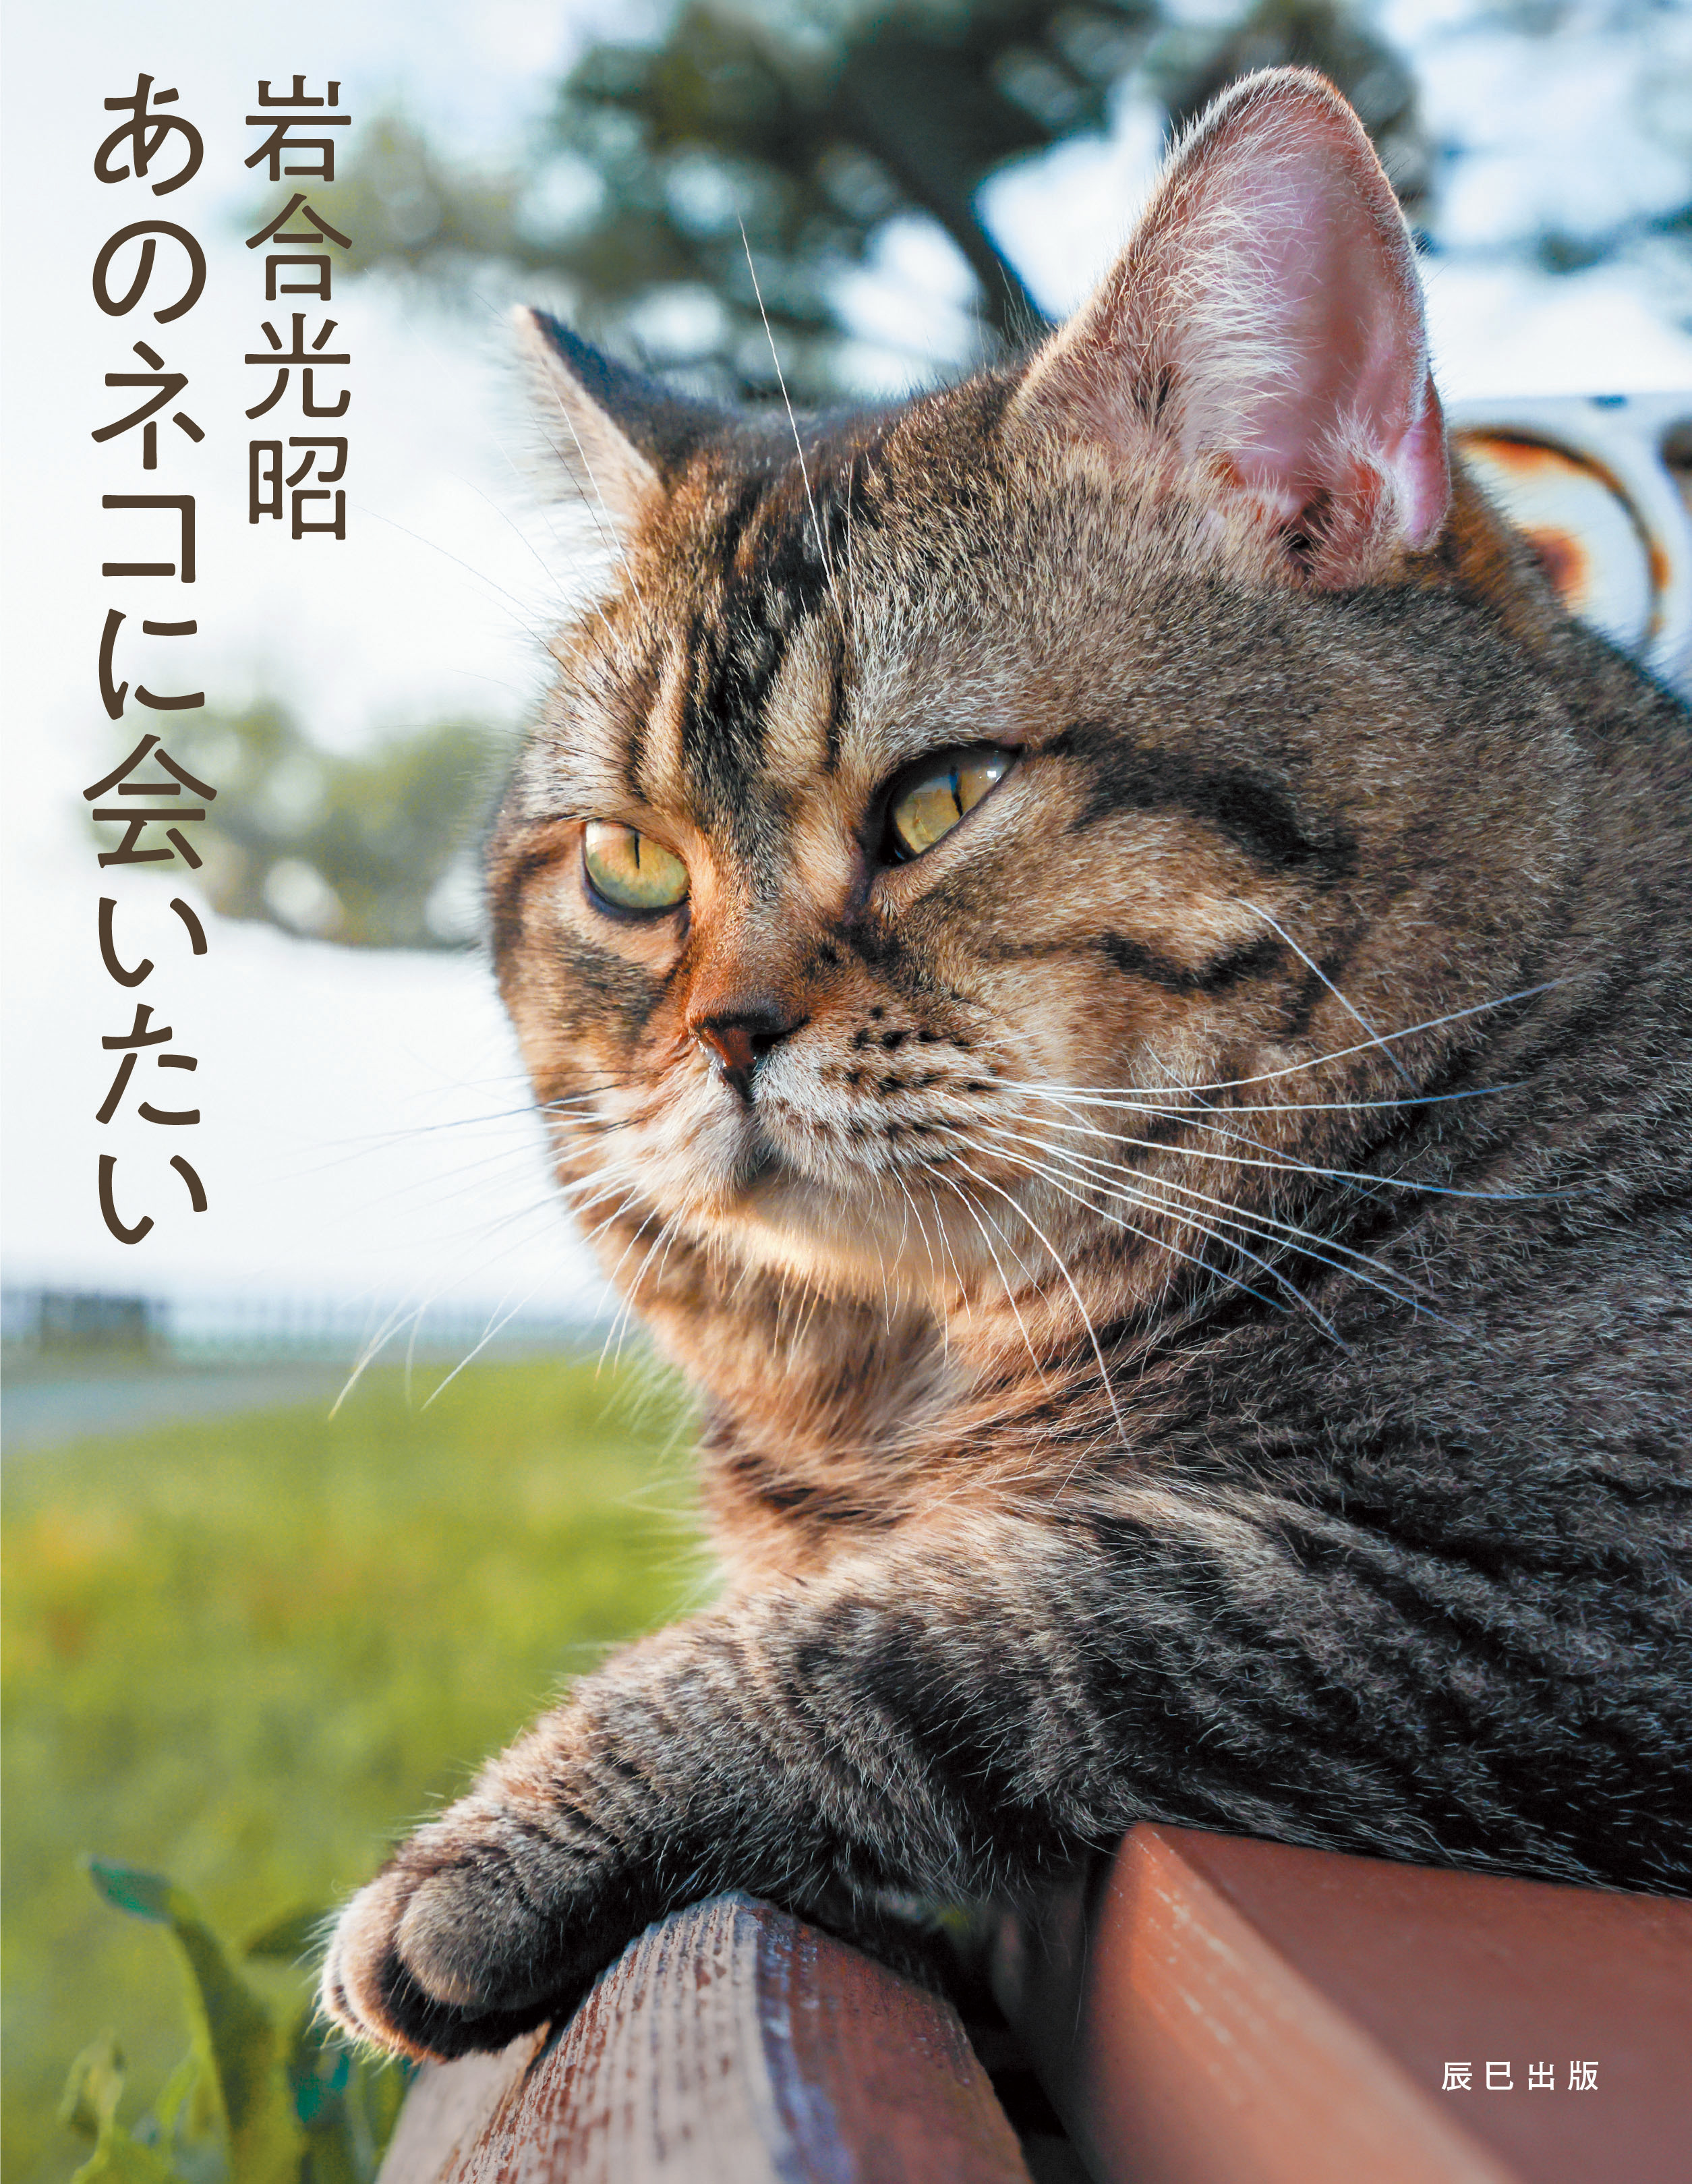 まるでスター猫の世界選抜 岩合光昭 写真集 あのネコに会いたい 発売 辰巳出版株式会社のプレスリリース